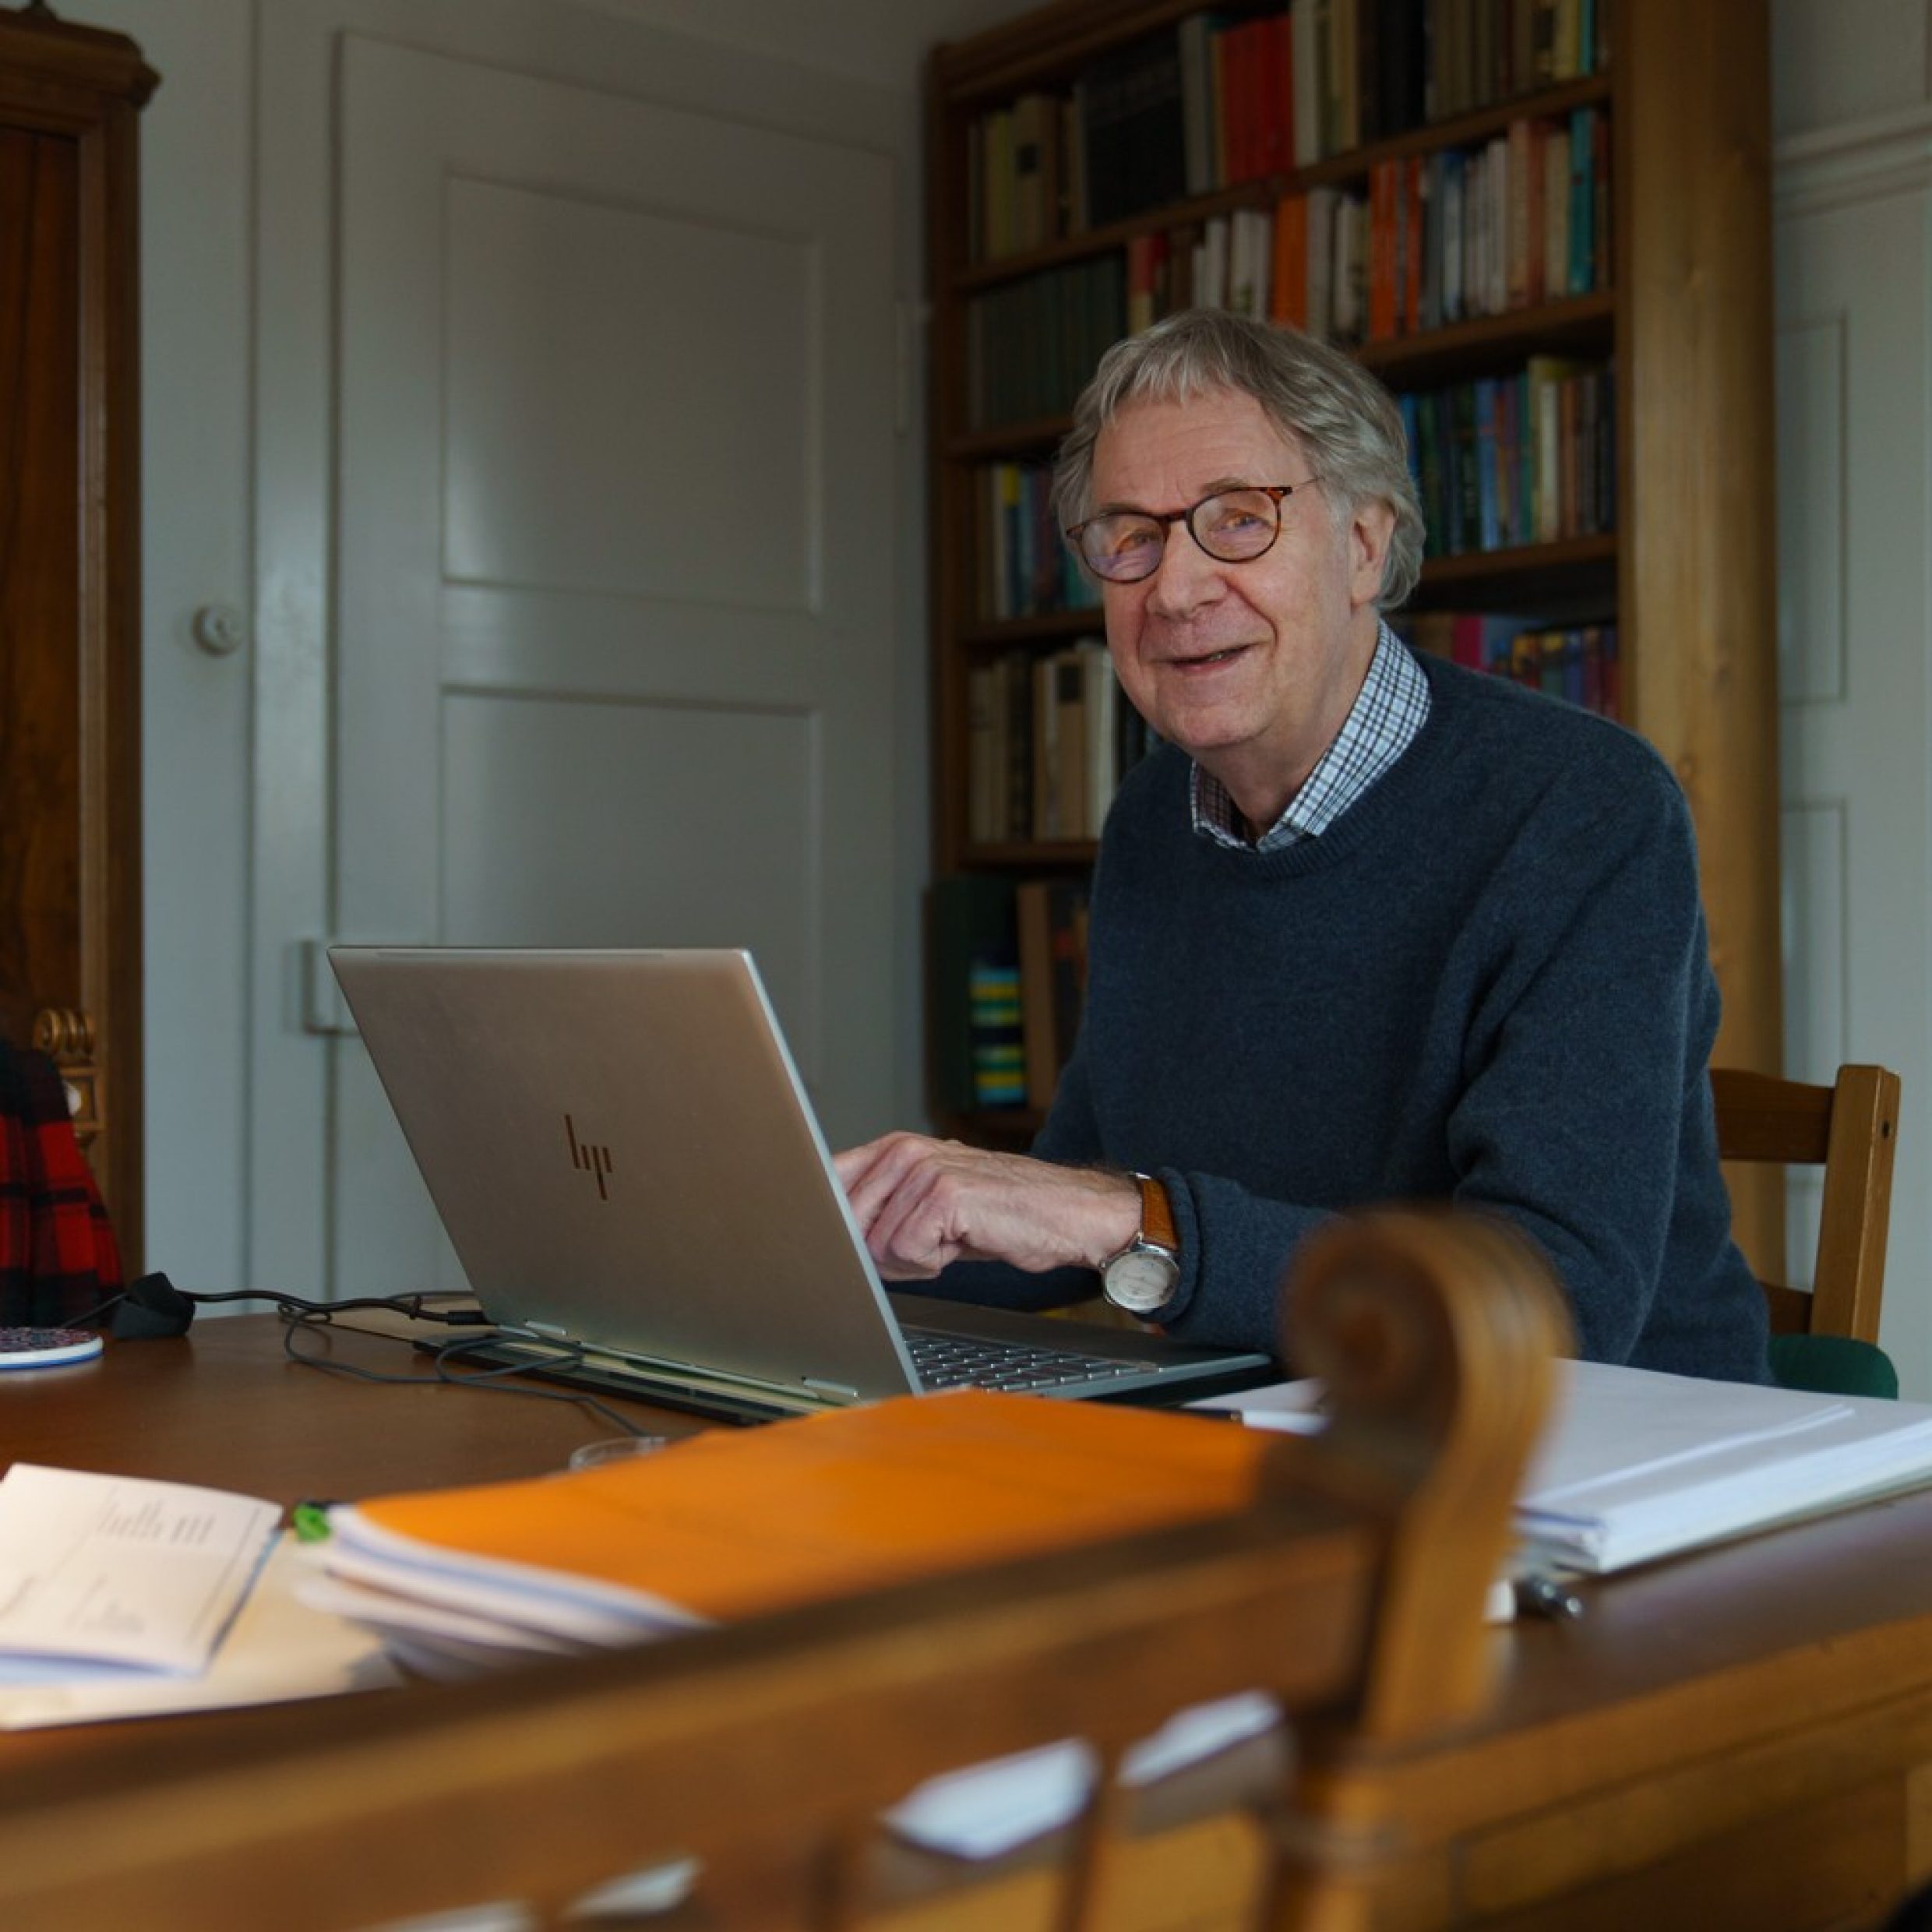 Un uomo anziano seduto a un tavolo davanti a un laptop mostra qualcosa sullo schermo. Sorride alla fotocamera. Ha i capelli grigi, porta gli occhiali e un maglione blu. 